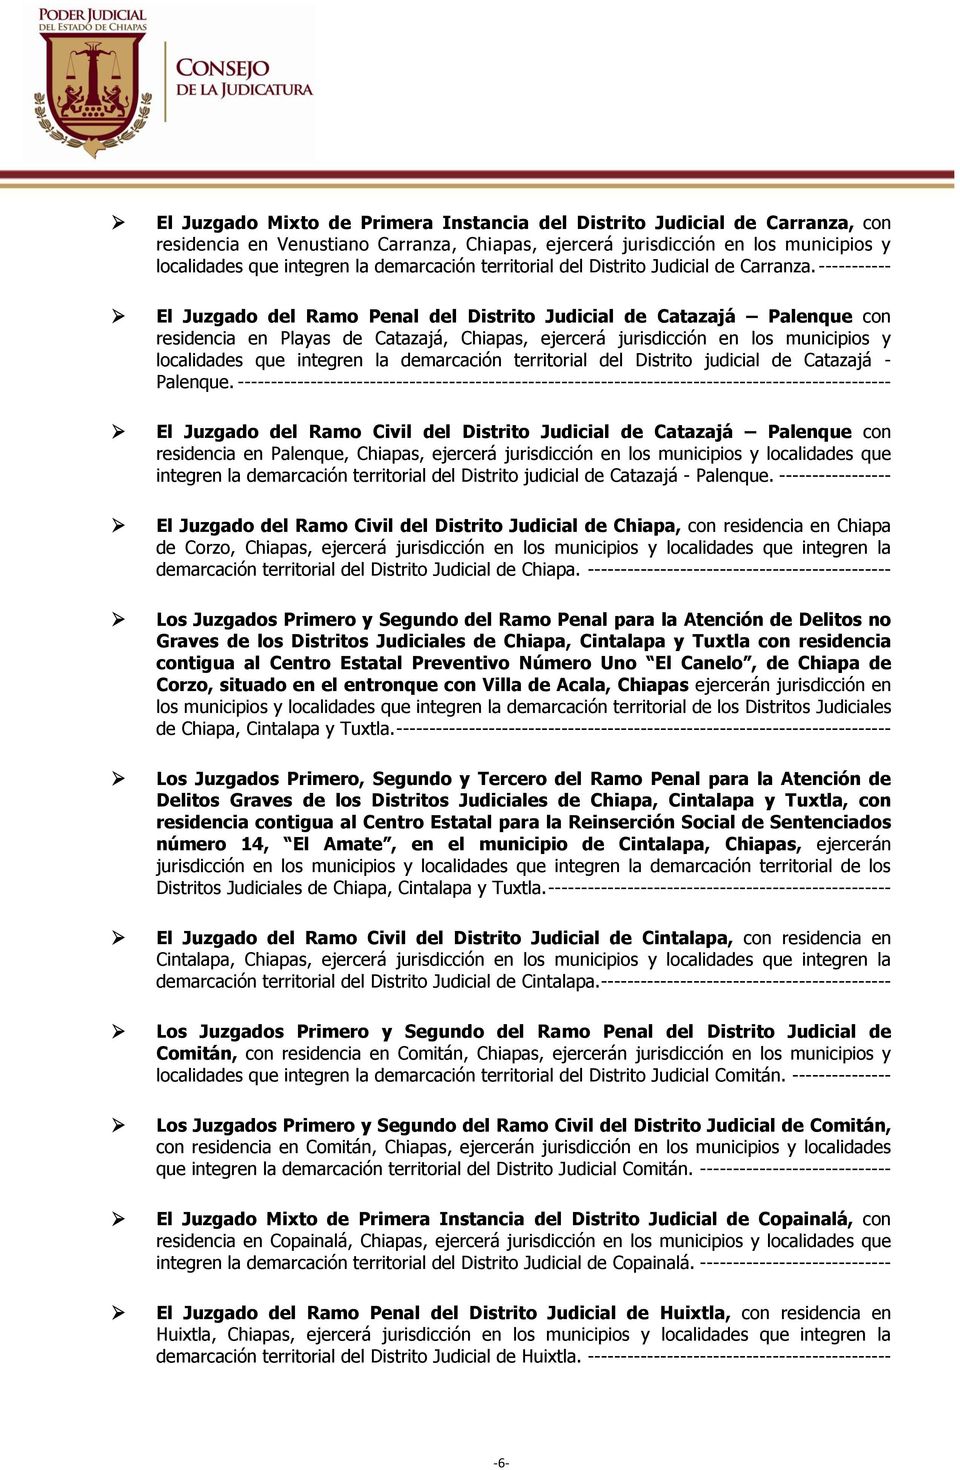 ----------- El Juzgado del Ramo Penal del Distrito Judicial de Catazajá Palenque con residencia en Playas de Catazajá, Chiapas, ejercerá jurisdicción en los municipios y localidades que integren la